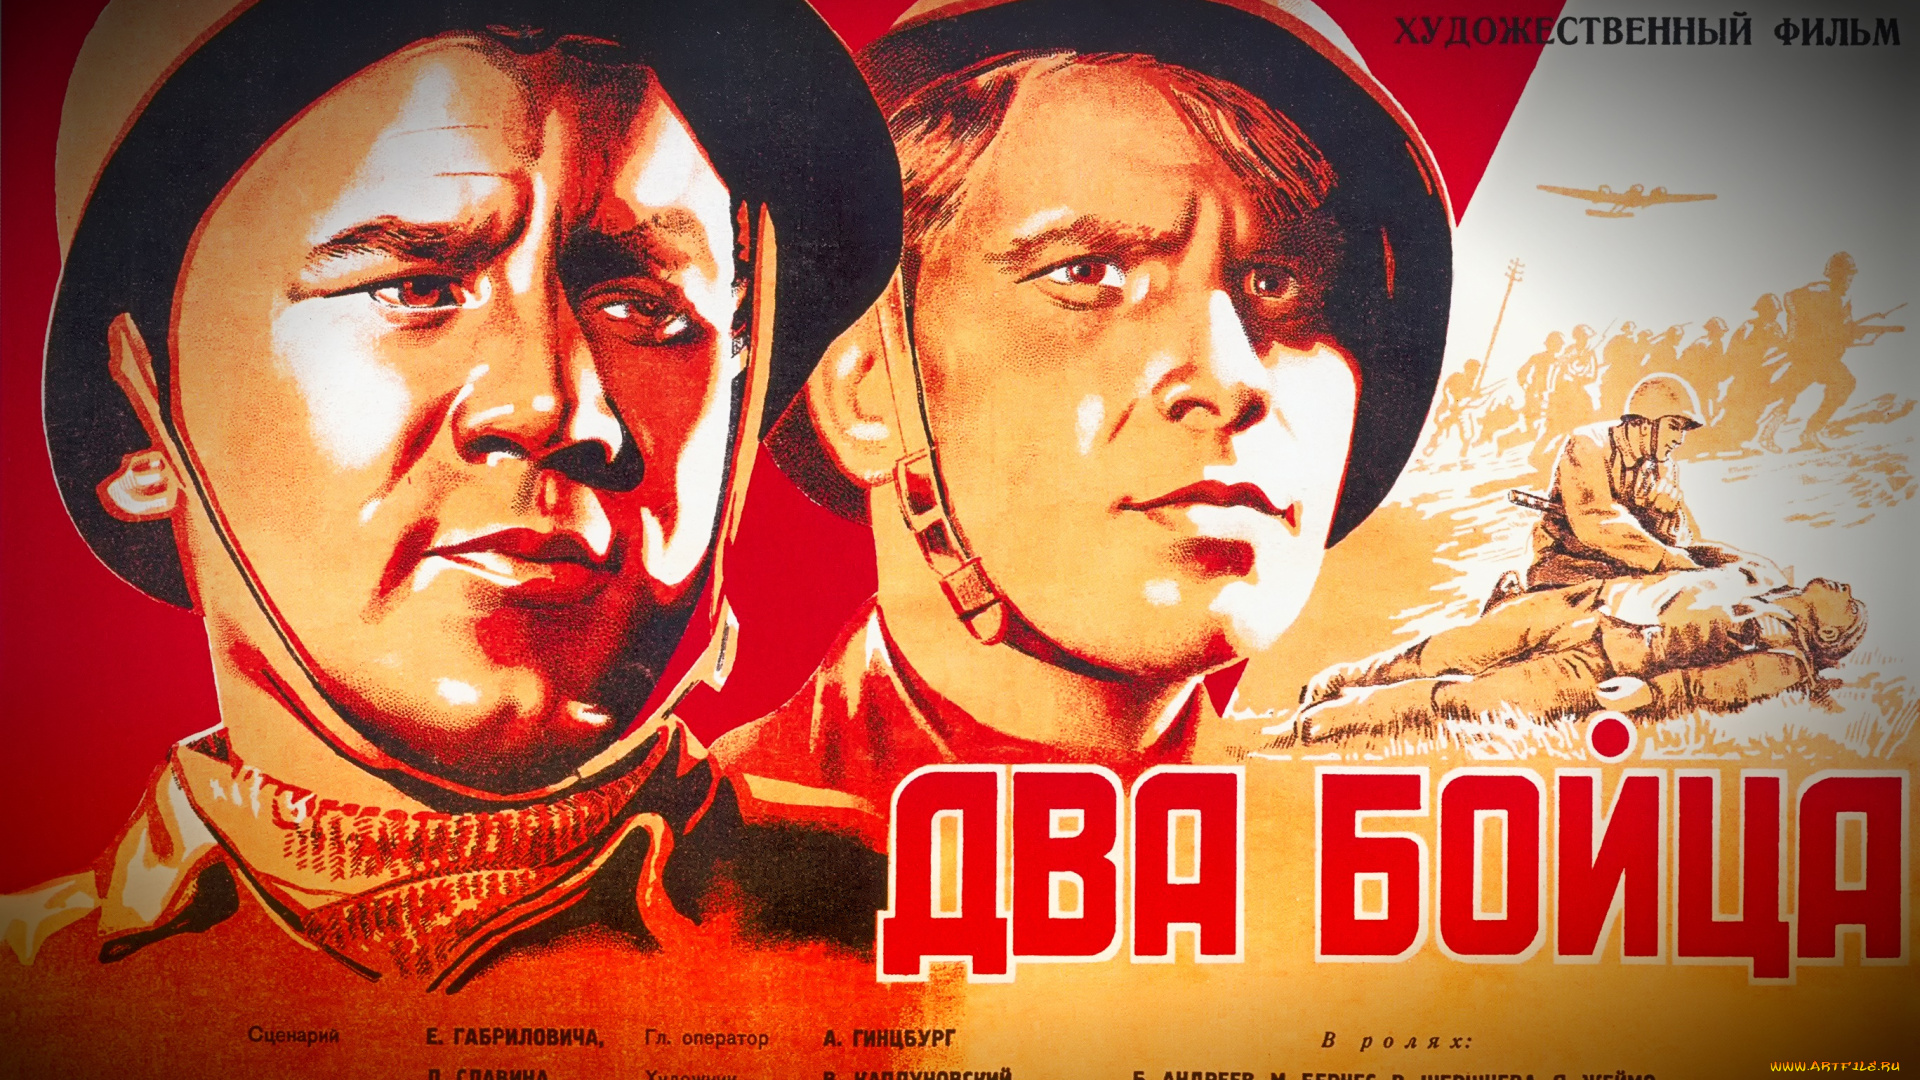 рисованное, кино, 1943, год, два, бойца, марк, бернес, борис, андреев